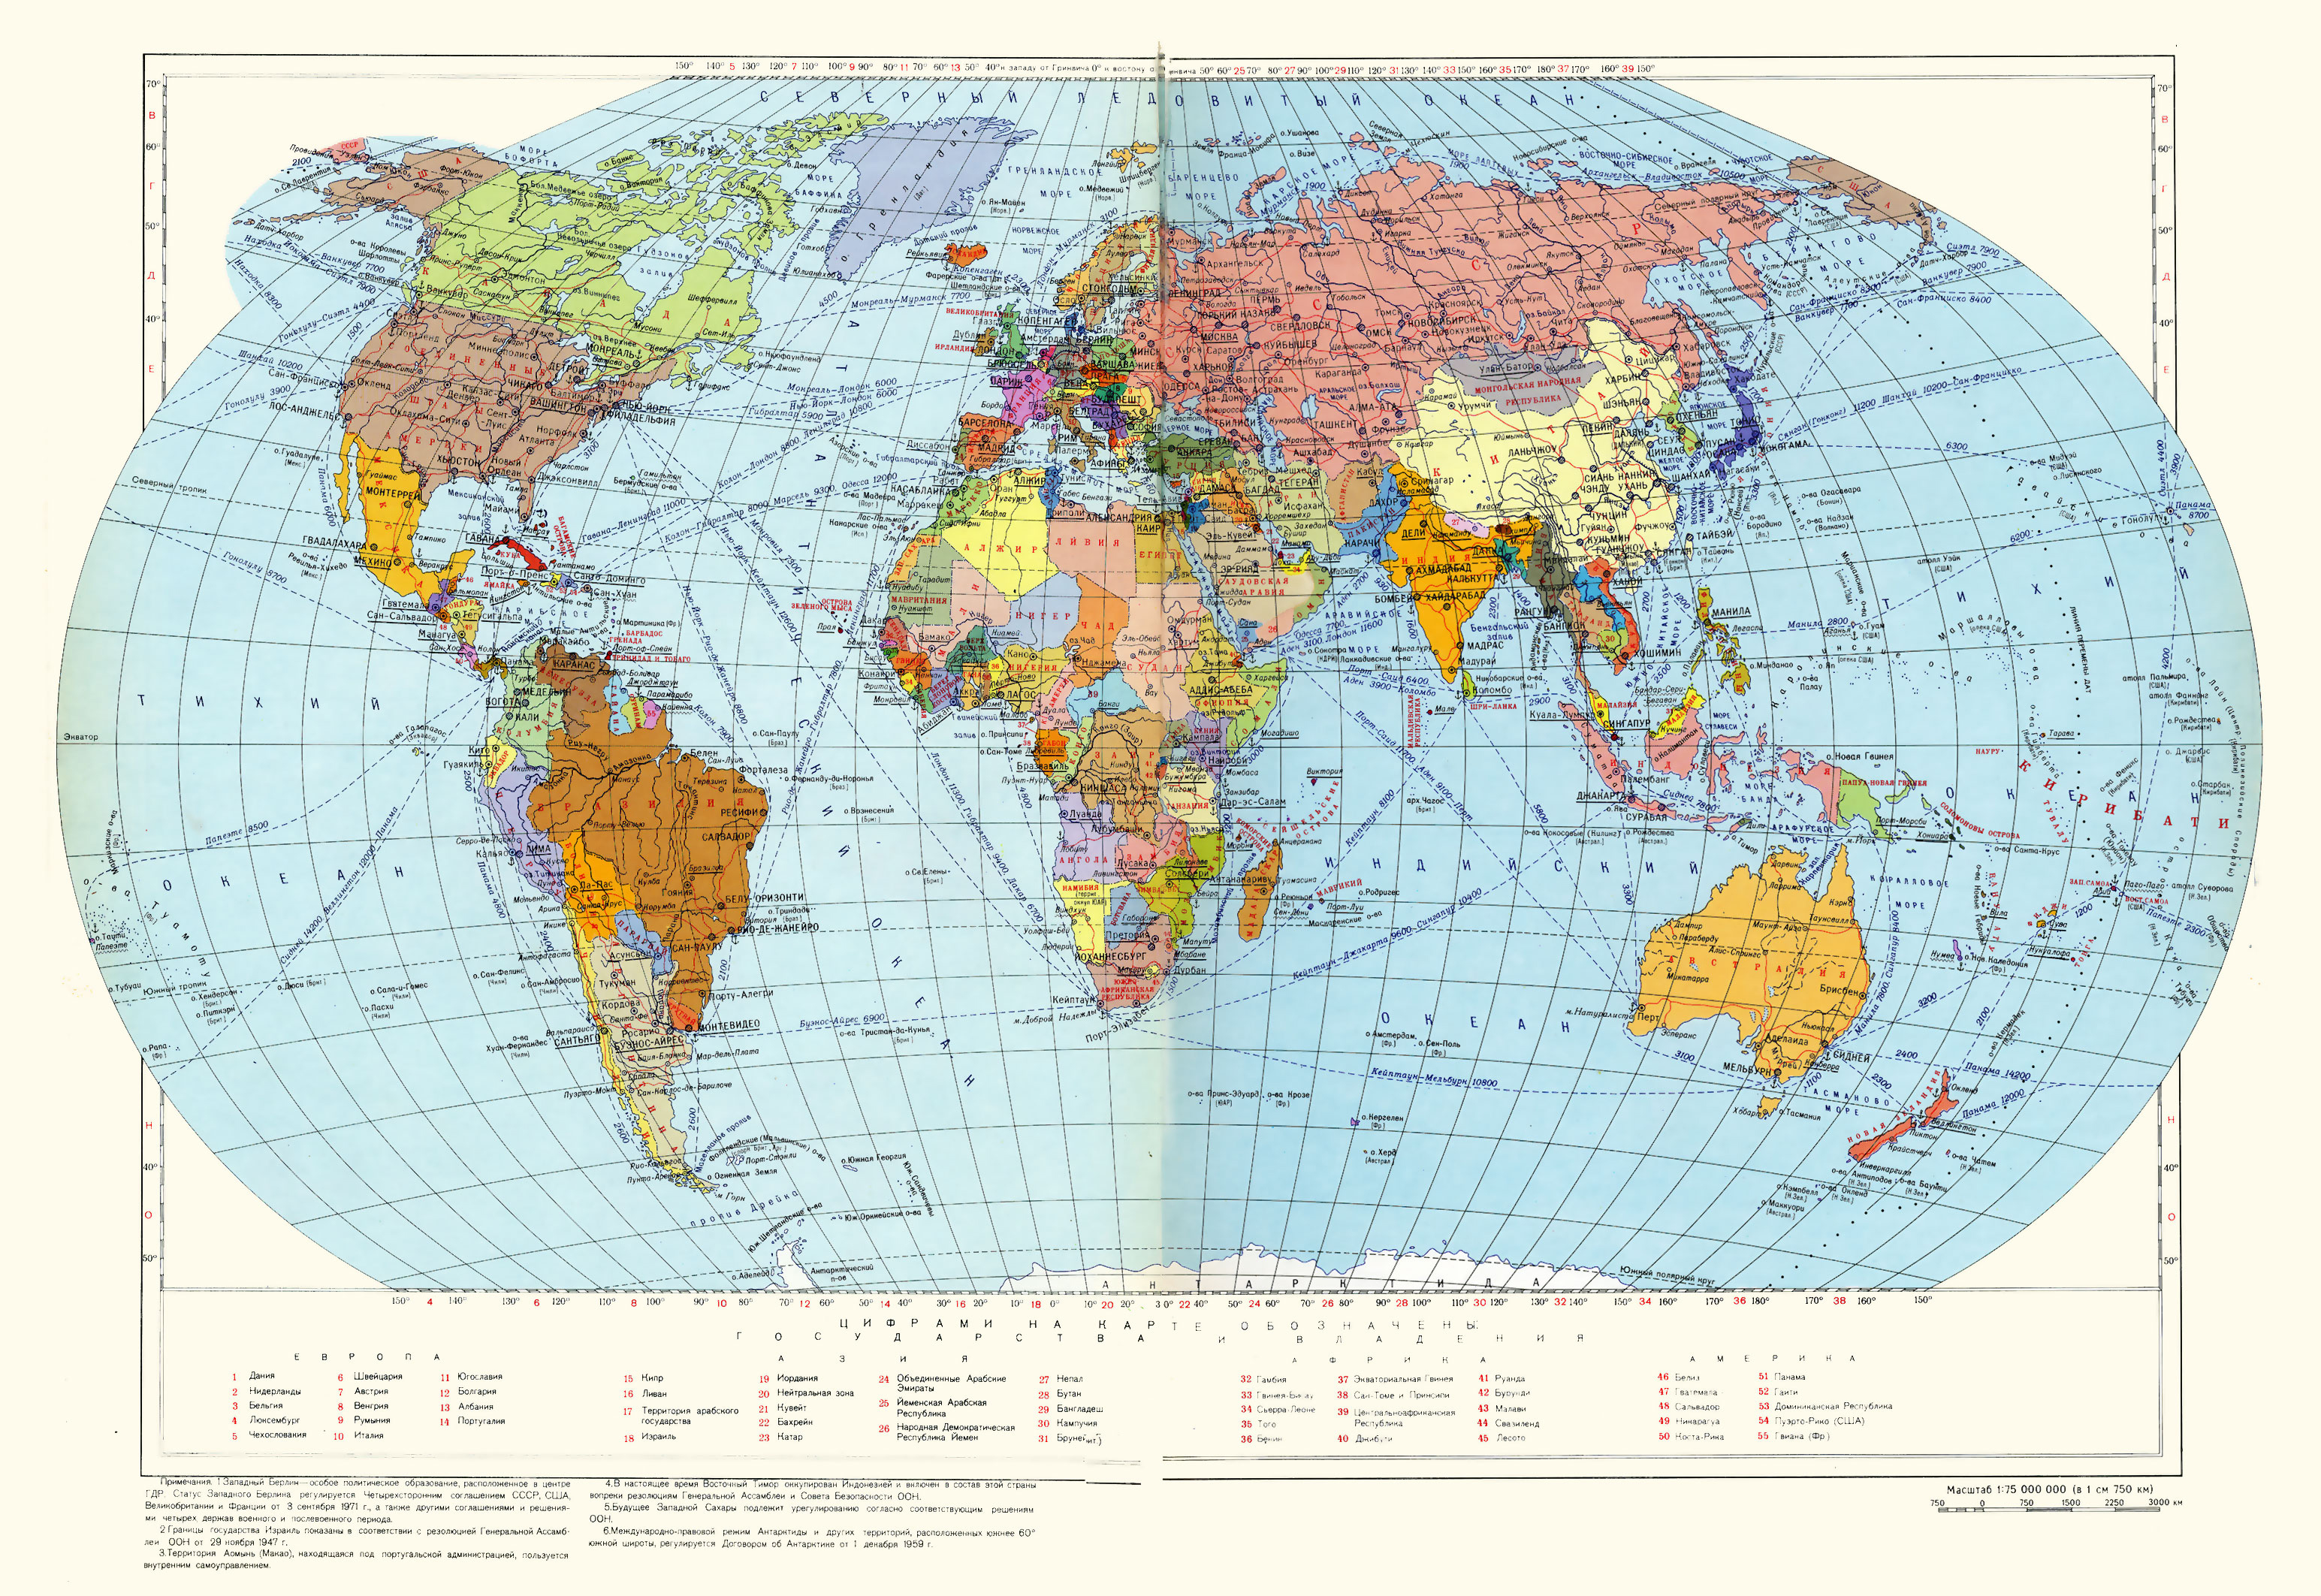 715942 Обои и Карта Мира картинки на рабочий стол. Скачать  заставки на ПК бесплатно